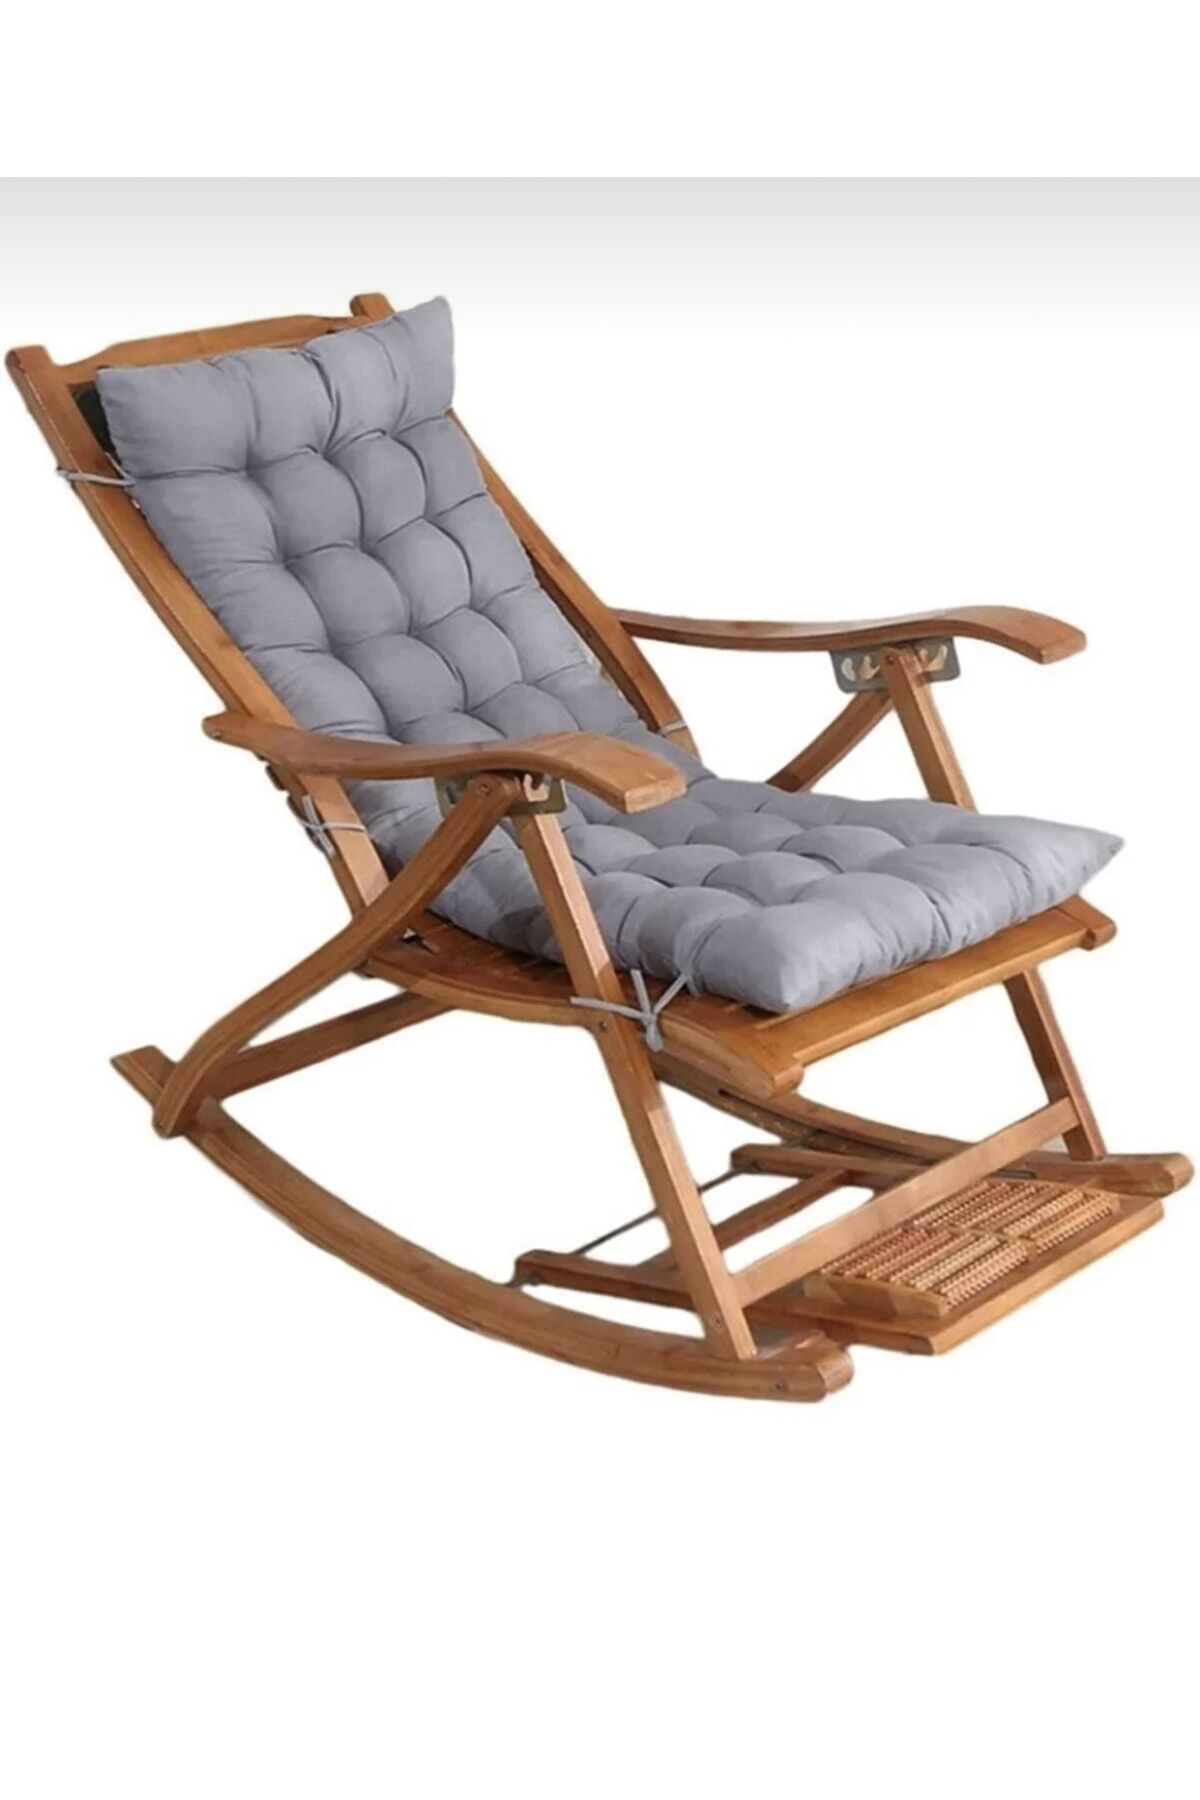 petspati Lüks Sallanan Sandalye Minderi Özel Dikişli Selen Bağcıklı 120x50 Gri (SADECE MİNDER)